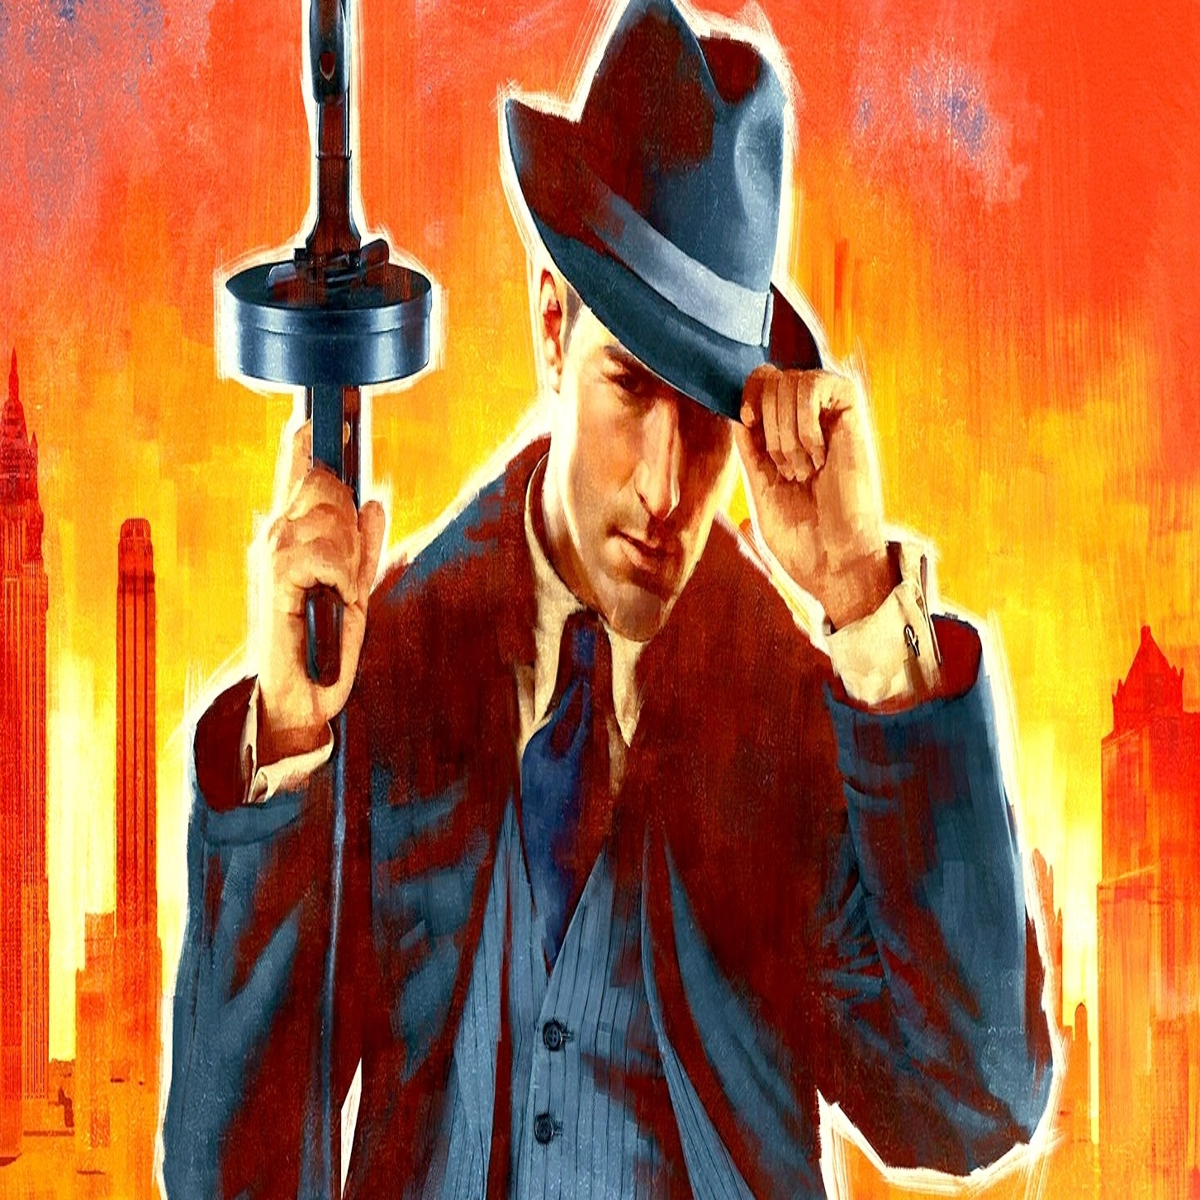 Mafia: Definitive Edition (PC) Review